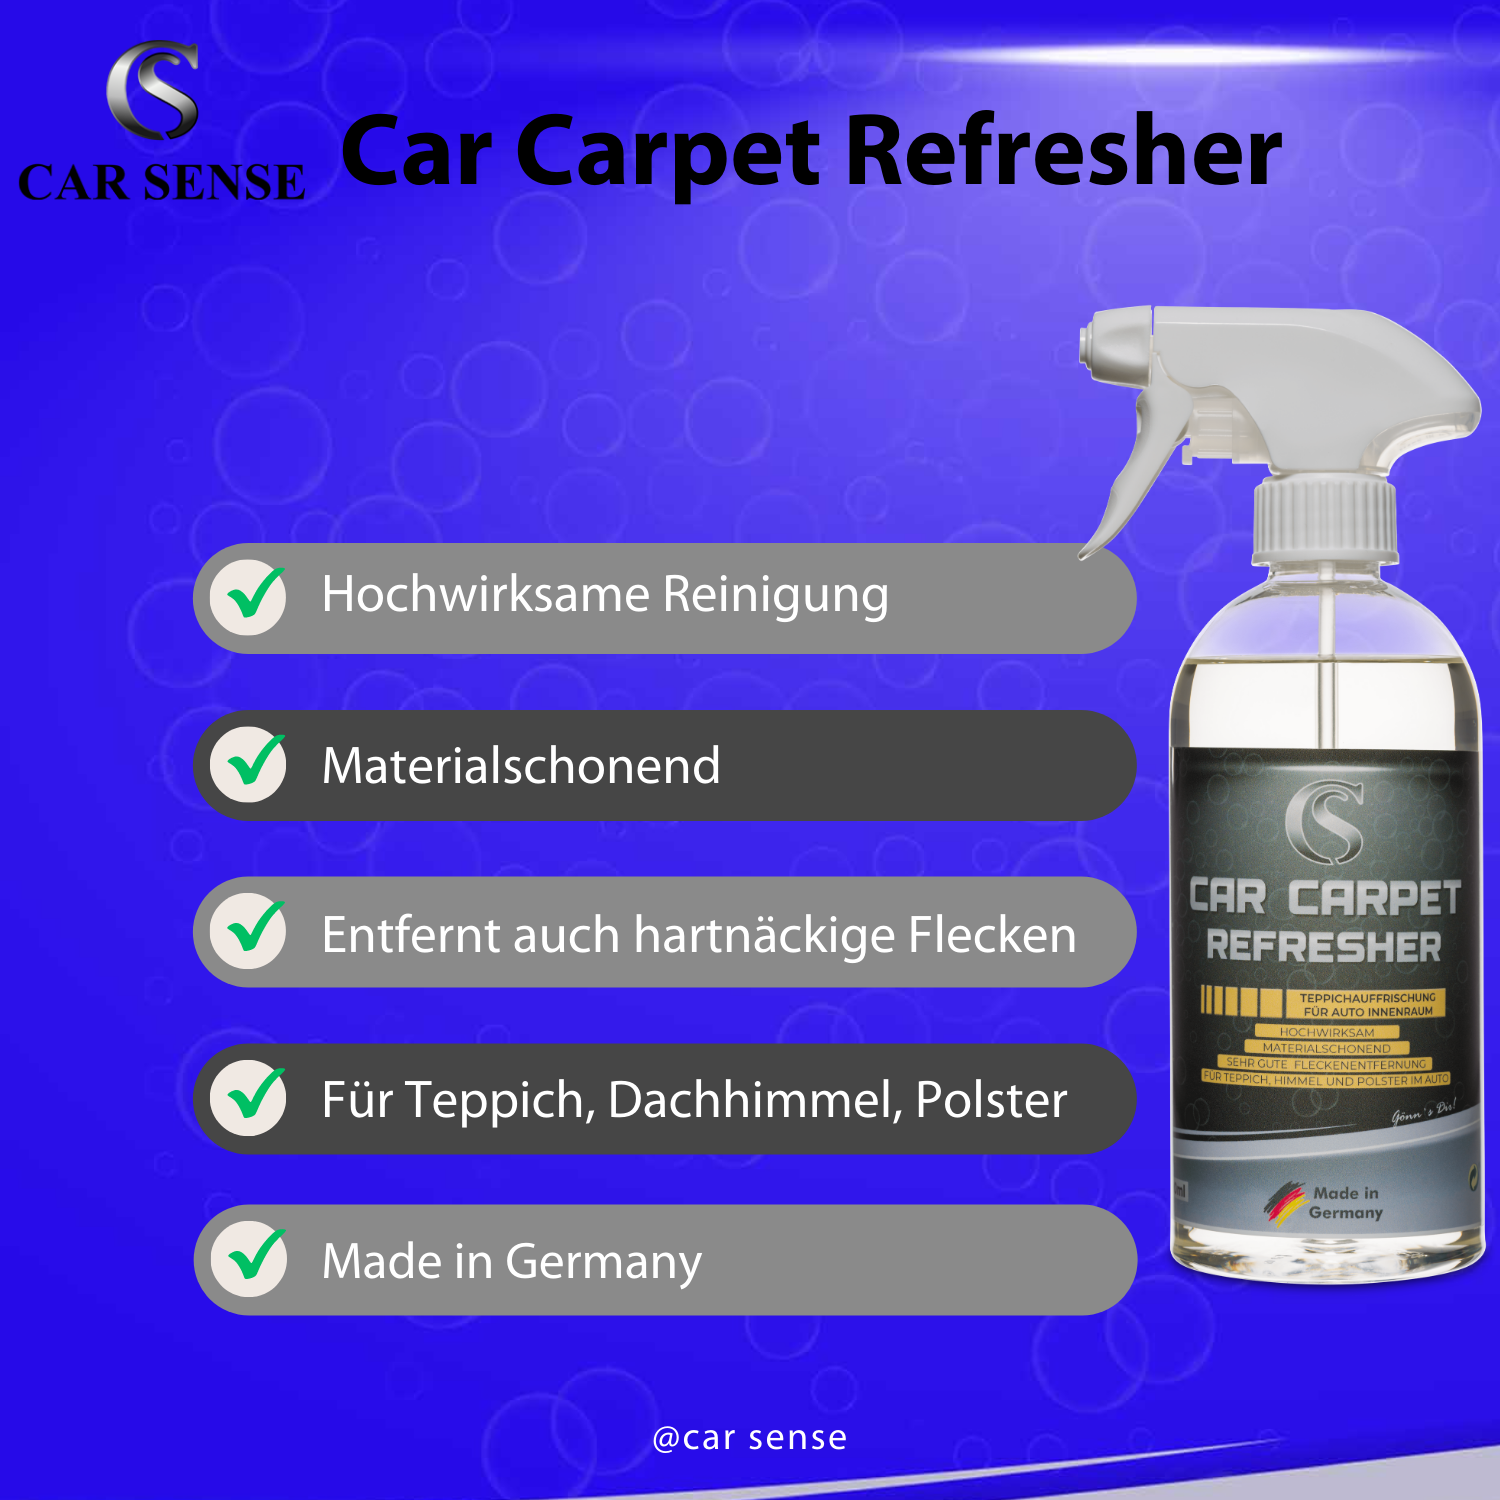 Car Sense Car Carpet Refresher - Polsterreinigung für Autoinnenraum  - Teppichreiniger Auto, Fleckenentferner für Teppich, Hochwirksam & materialschonend